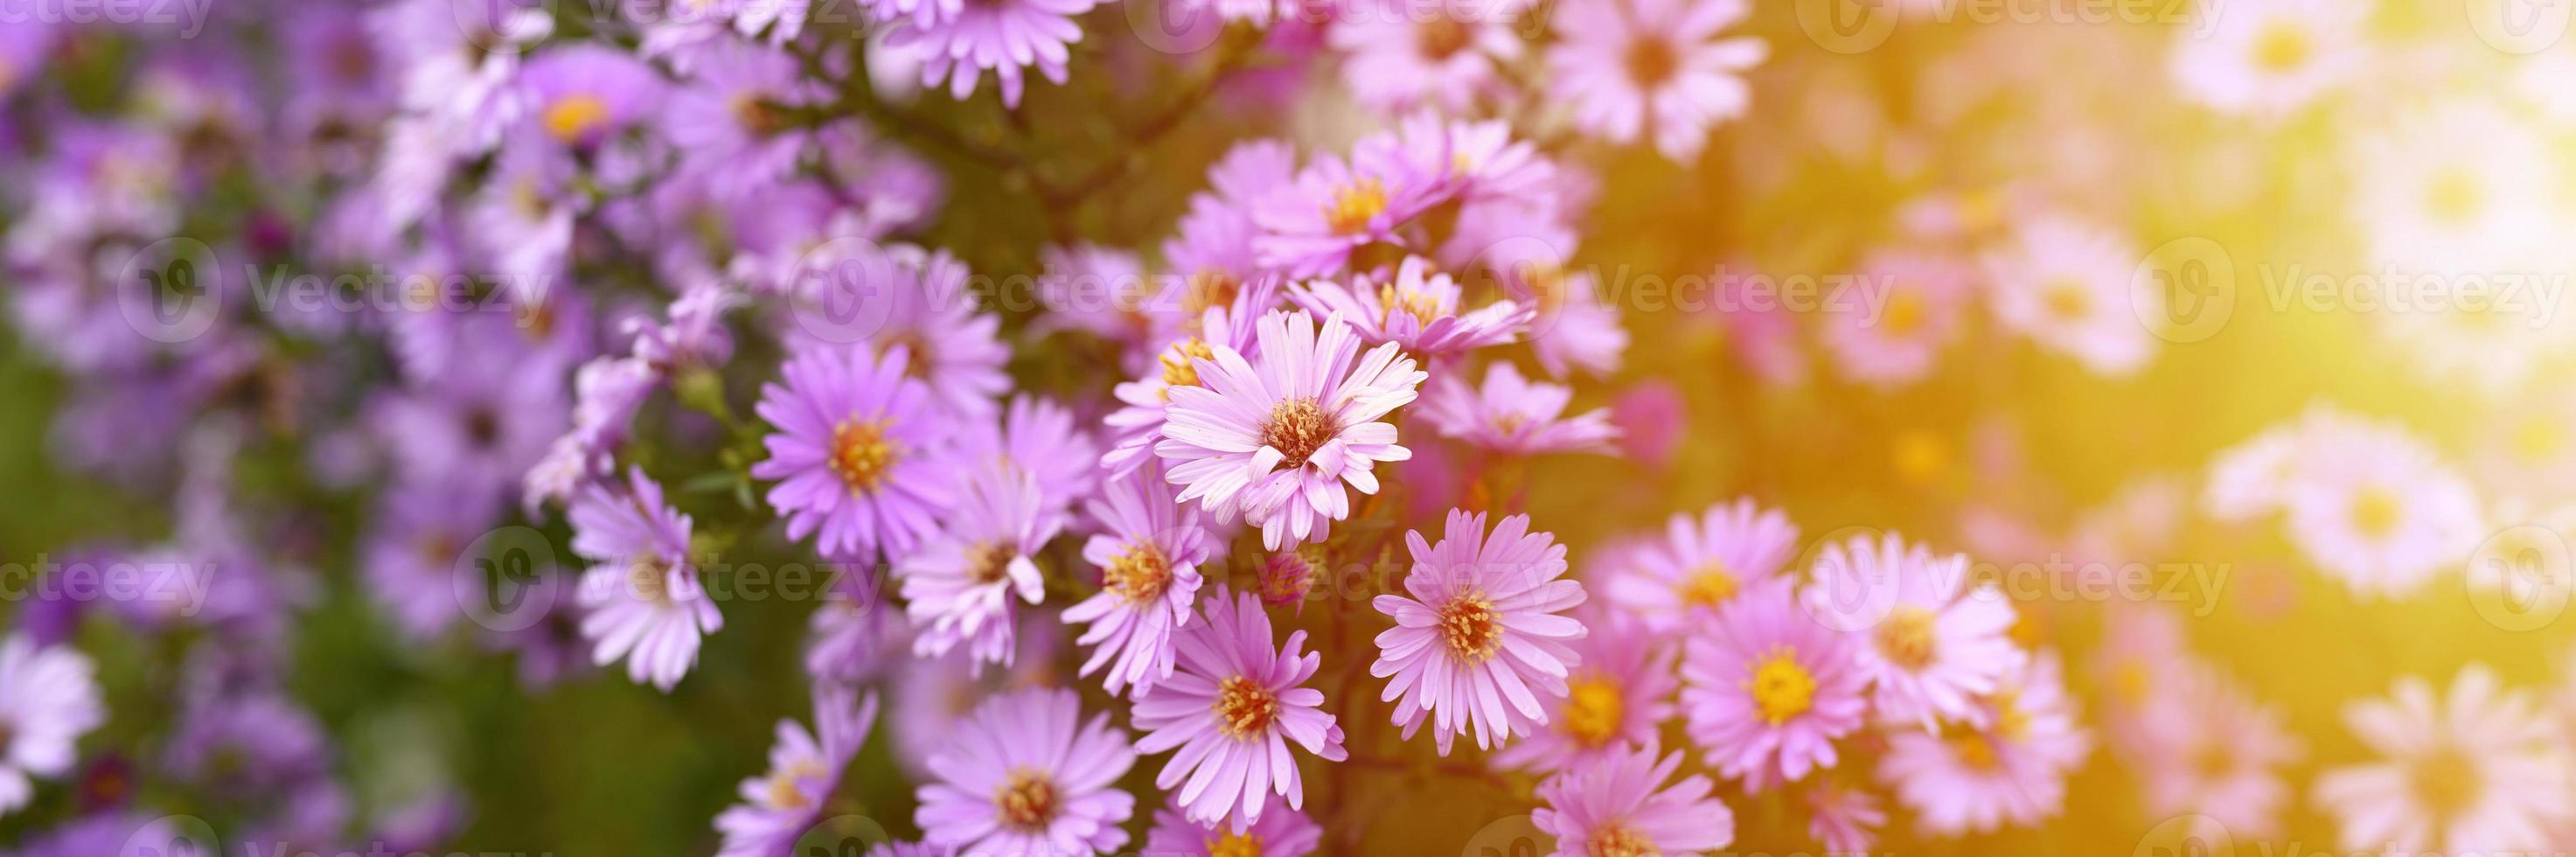 Fleurs d'automne aster novi-belgii vibrant de couleur violet clair photo